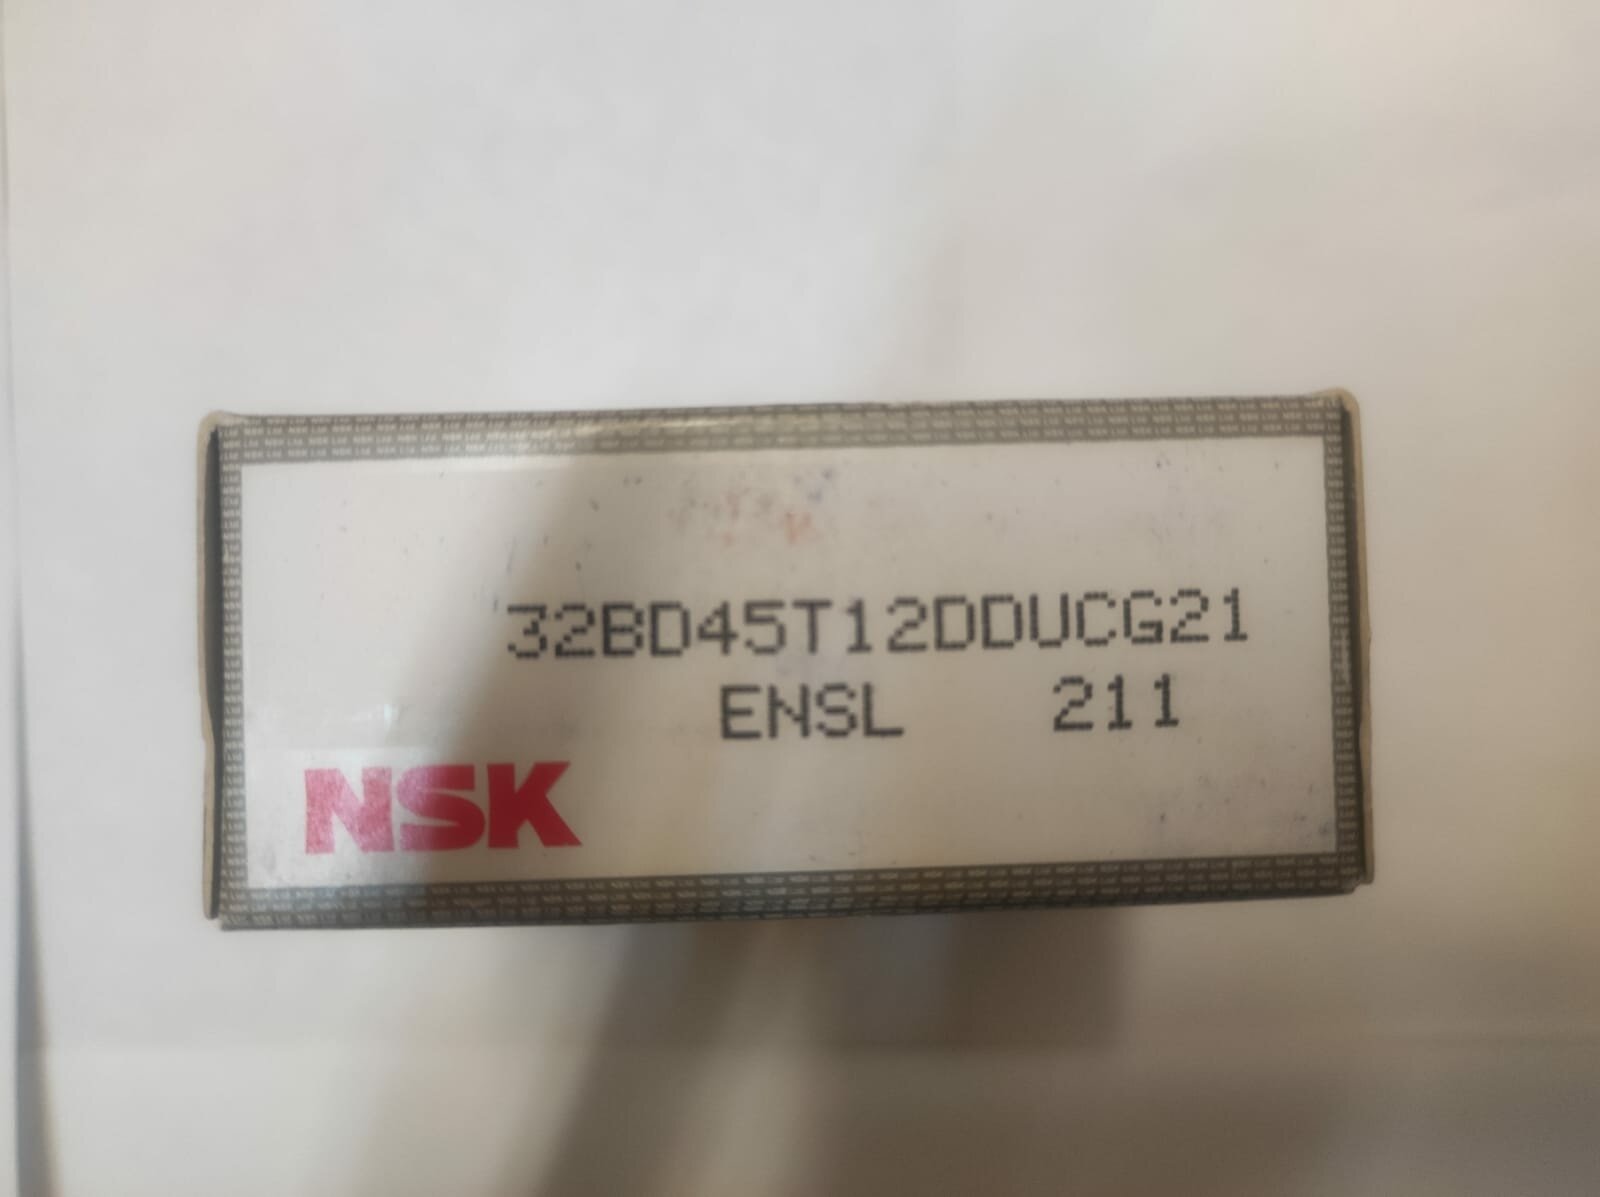 Подшипник NSK 32BD45T12DDUCG21